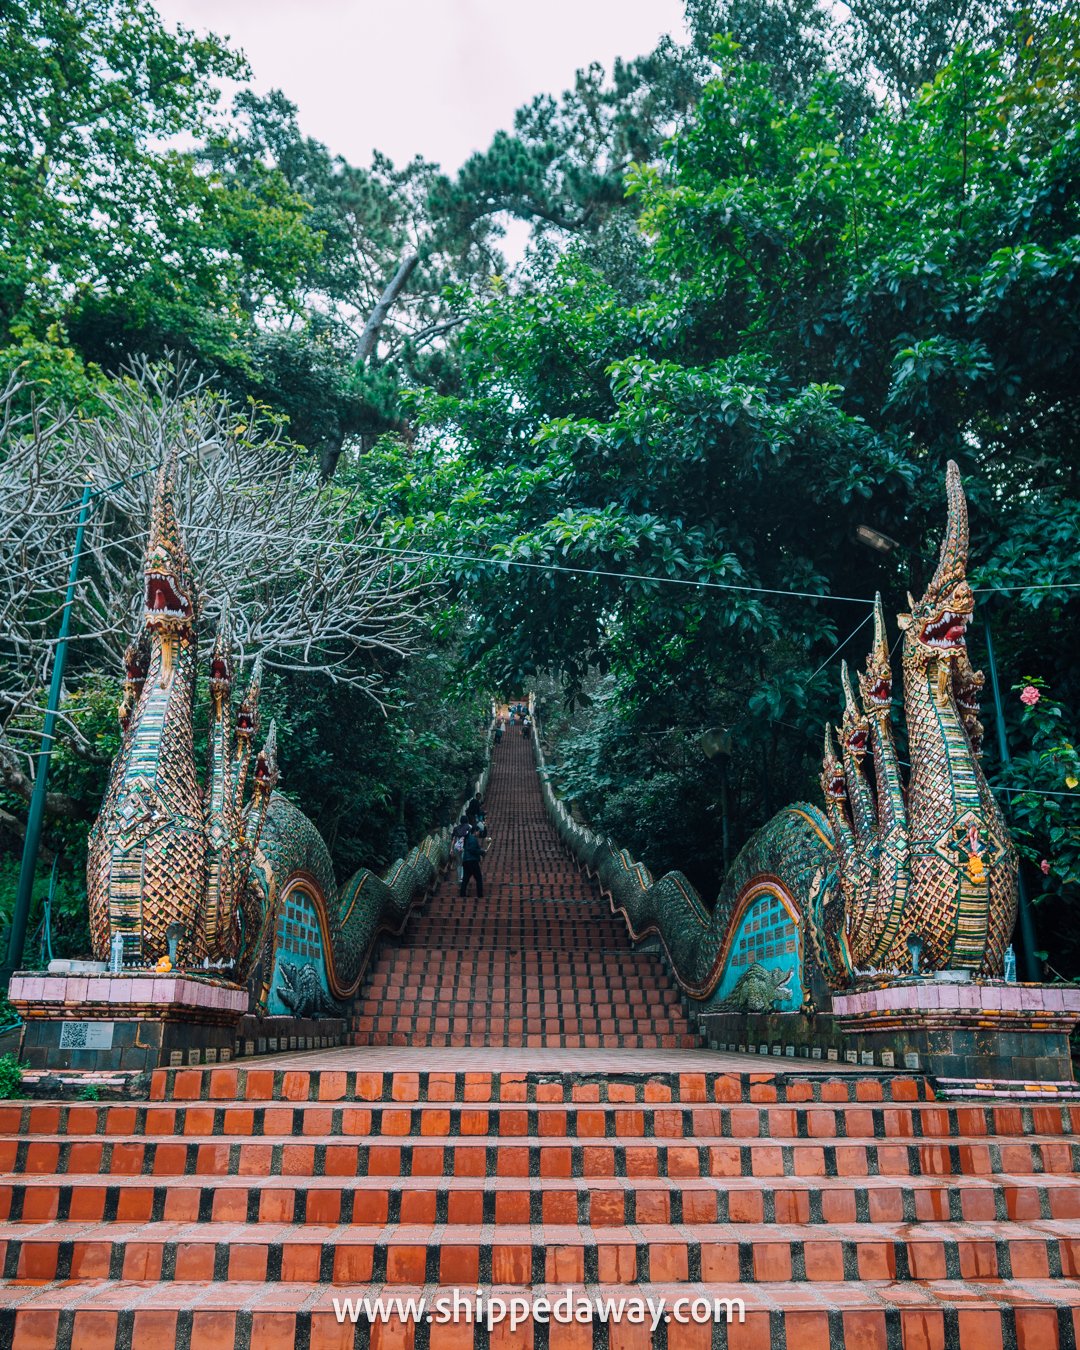 309 step Naga staircase of Wat Phra That Doi Suthep - Doi Suthep Temple Chiang Mai, Thailand - Travel Guide to Doi Suthep Temple